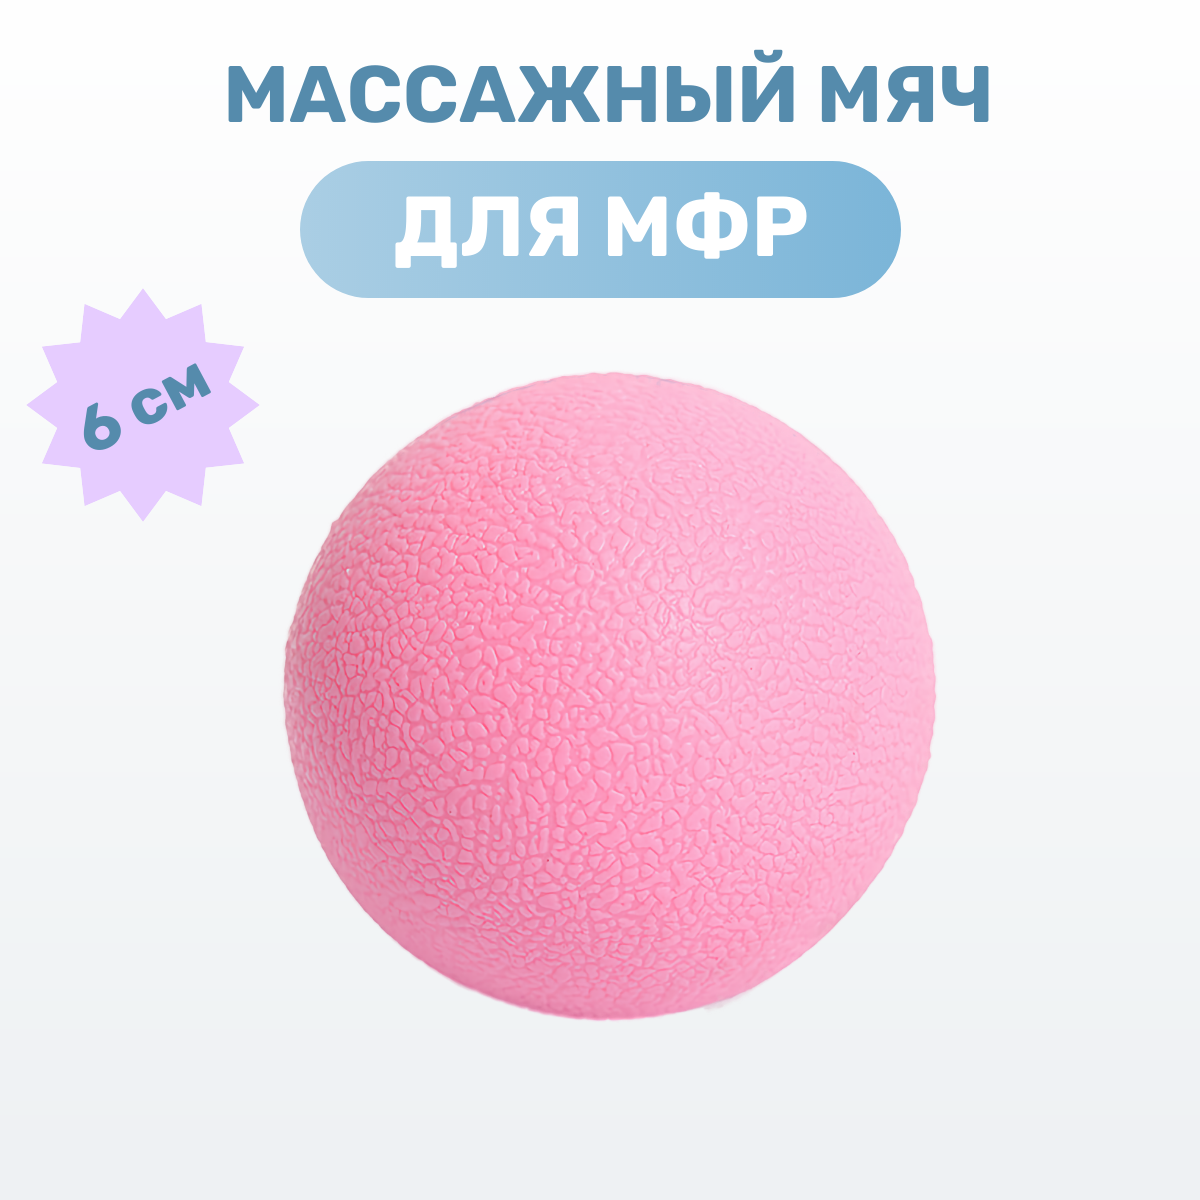 Массажный мяч МФР спортивный, диаметр 6 см., цвет розовый